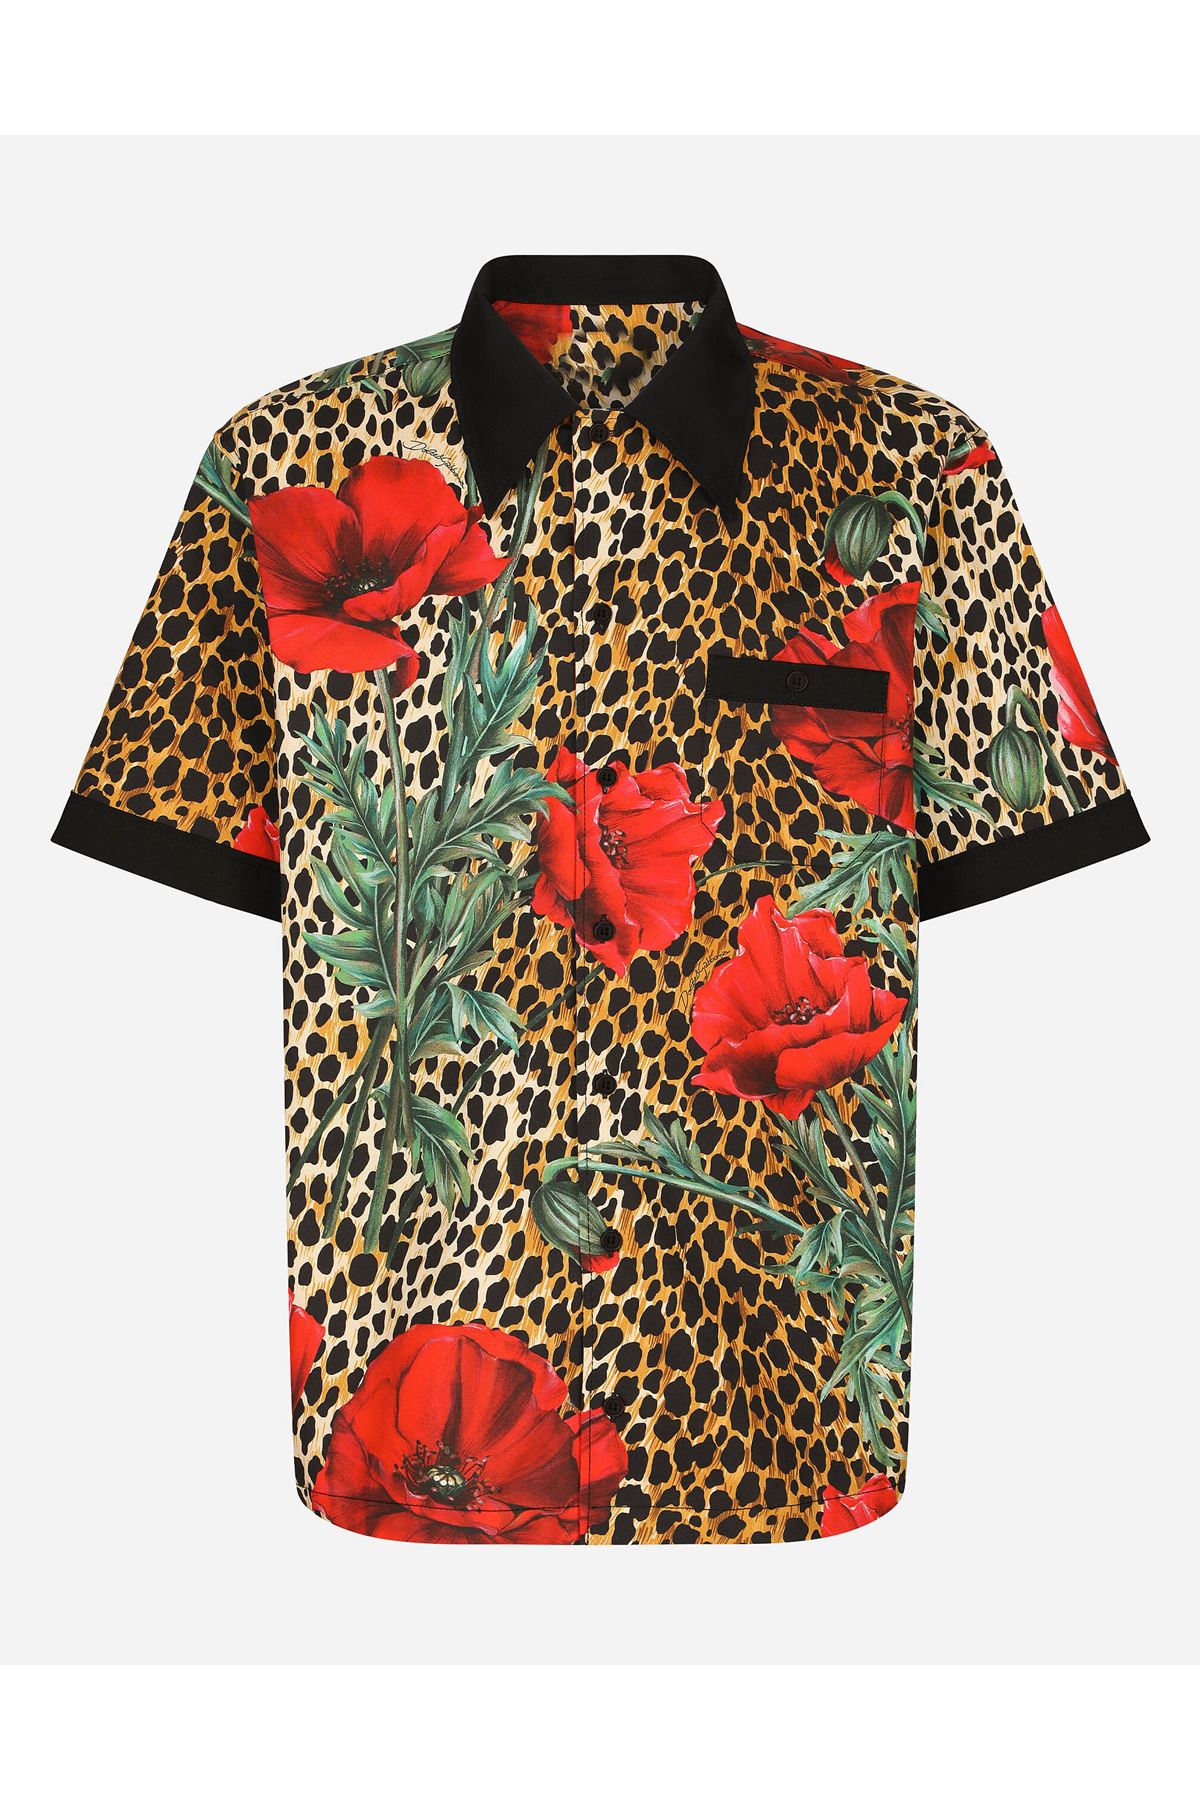 Erkek gömlek tasarım desenli gömlek leopar kırmızı çiçek